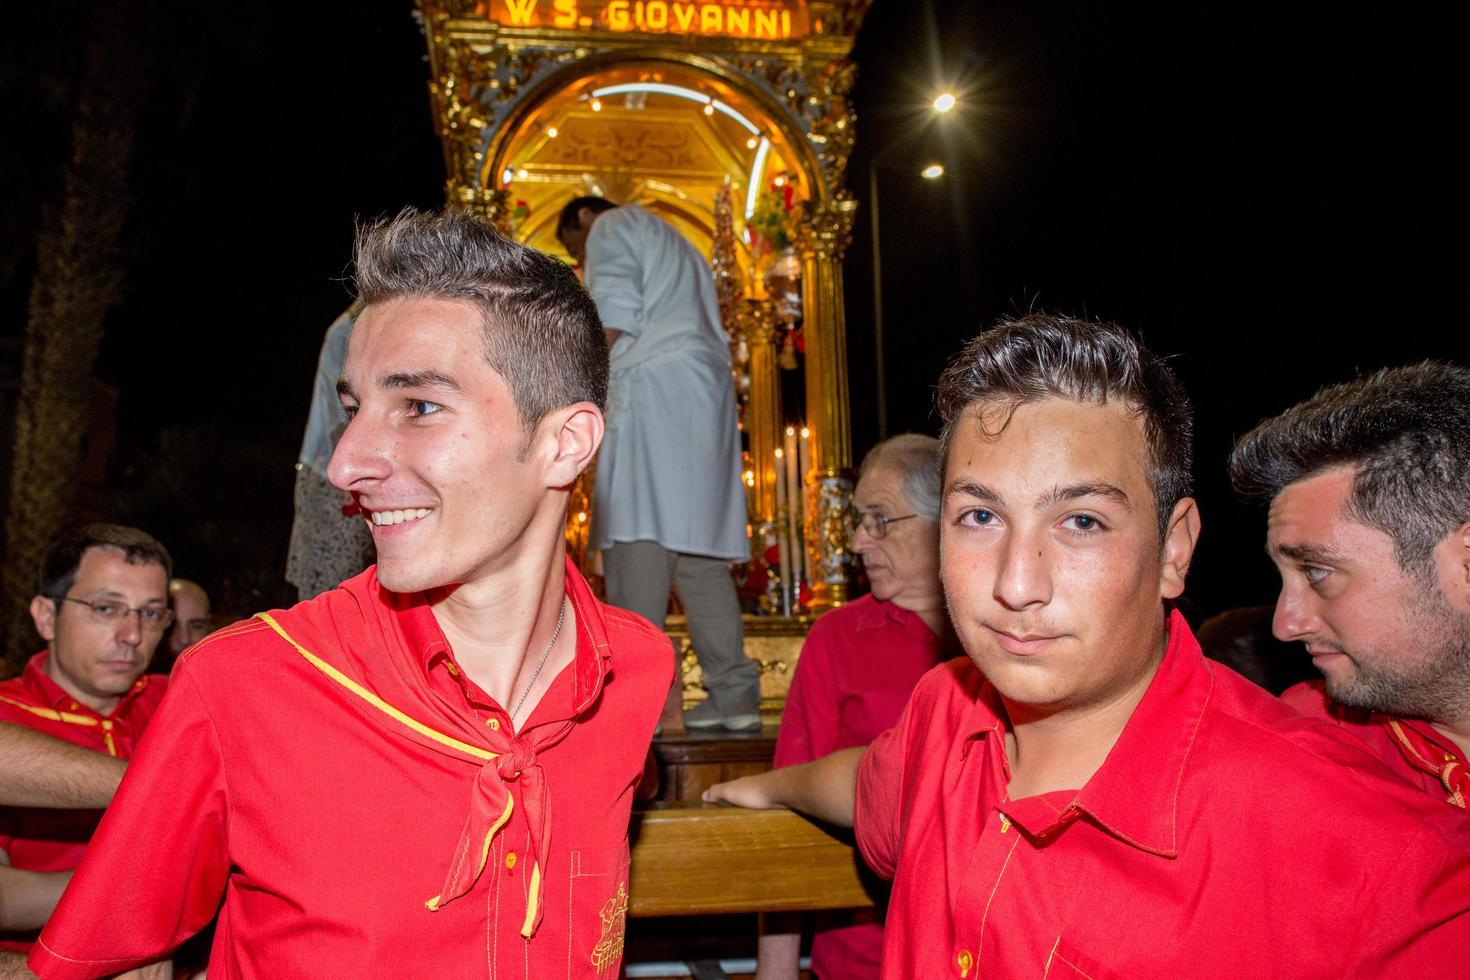 aci trezza, italien - juni, 24 2014 - feier der traditionellen parade von san giovanni foto